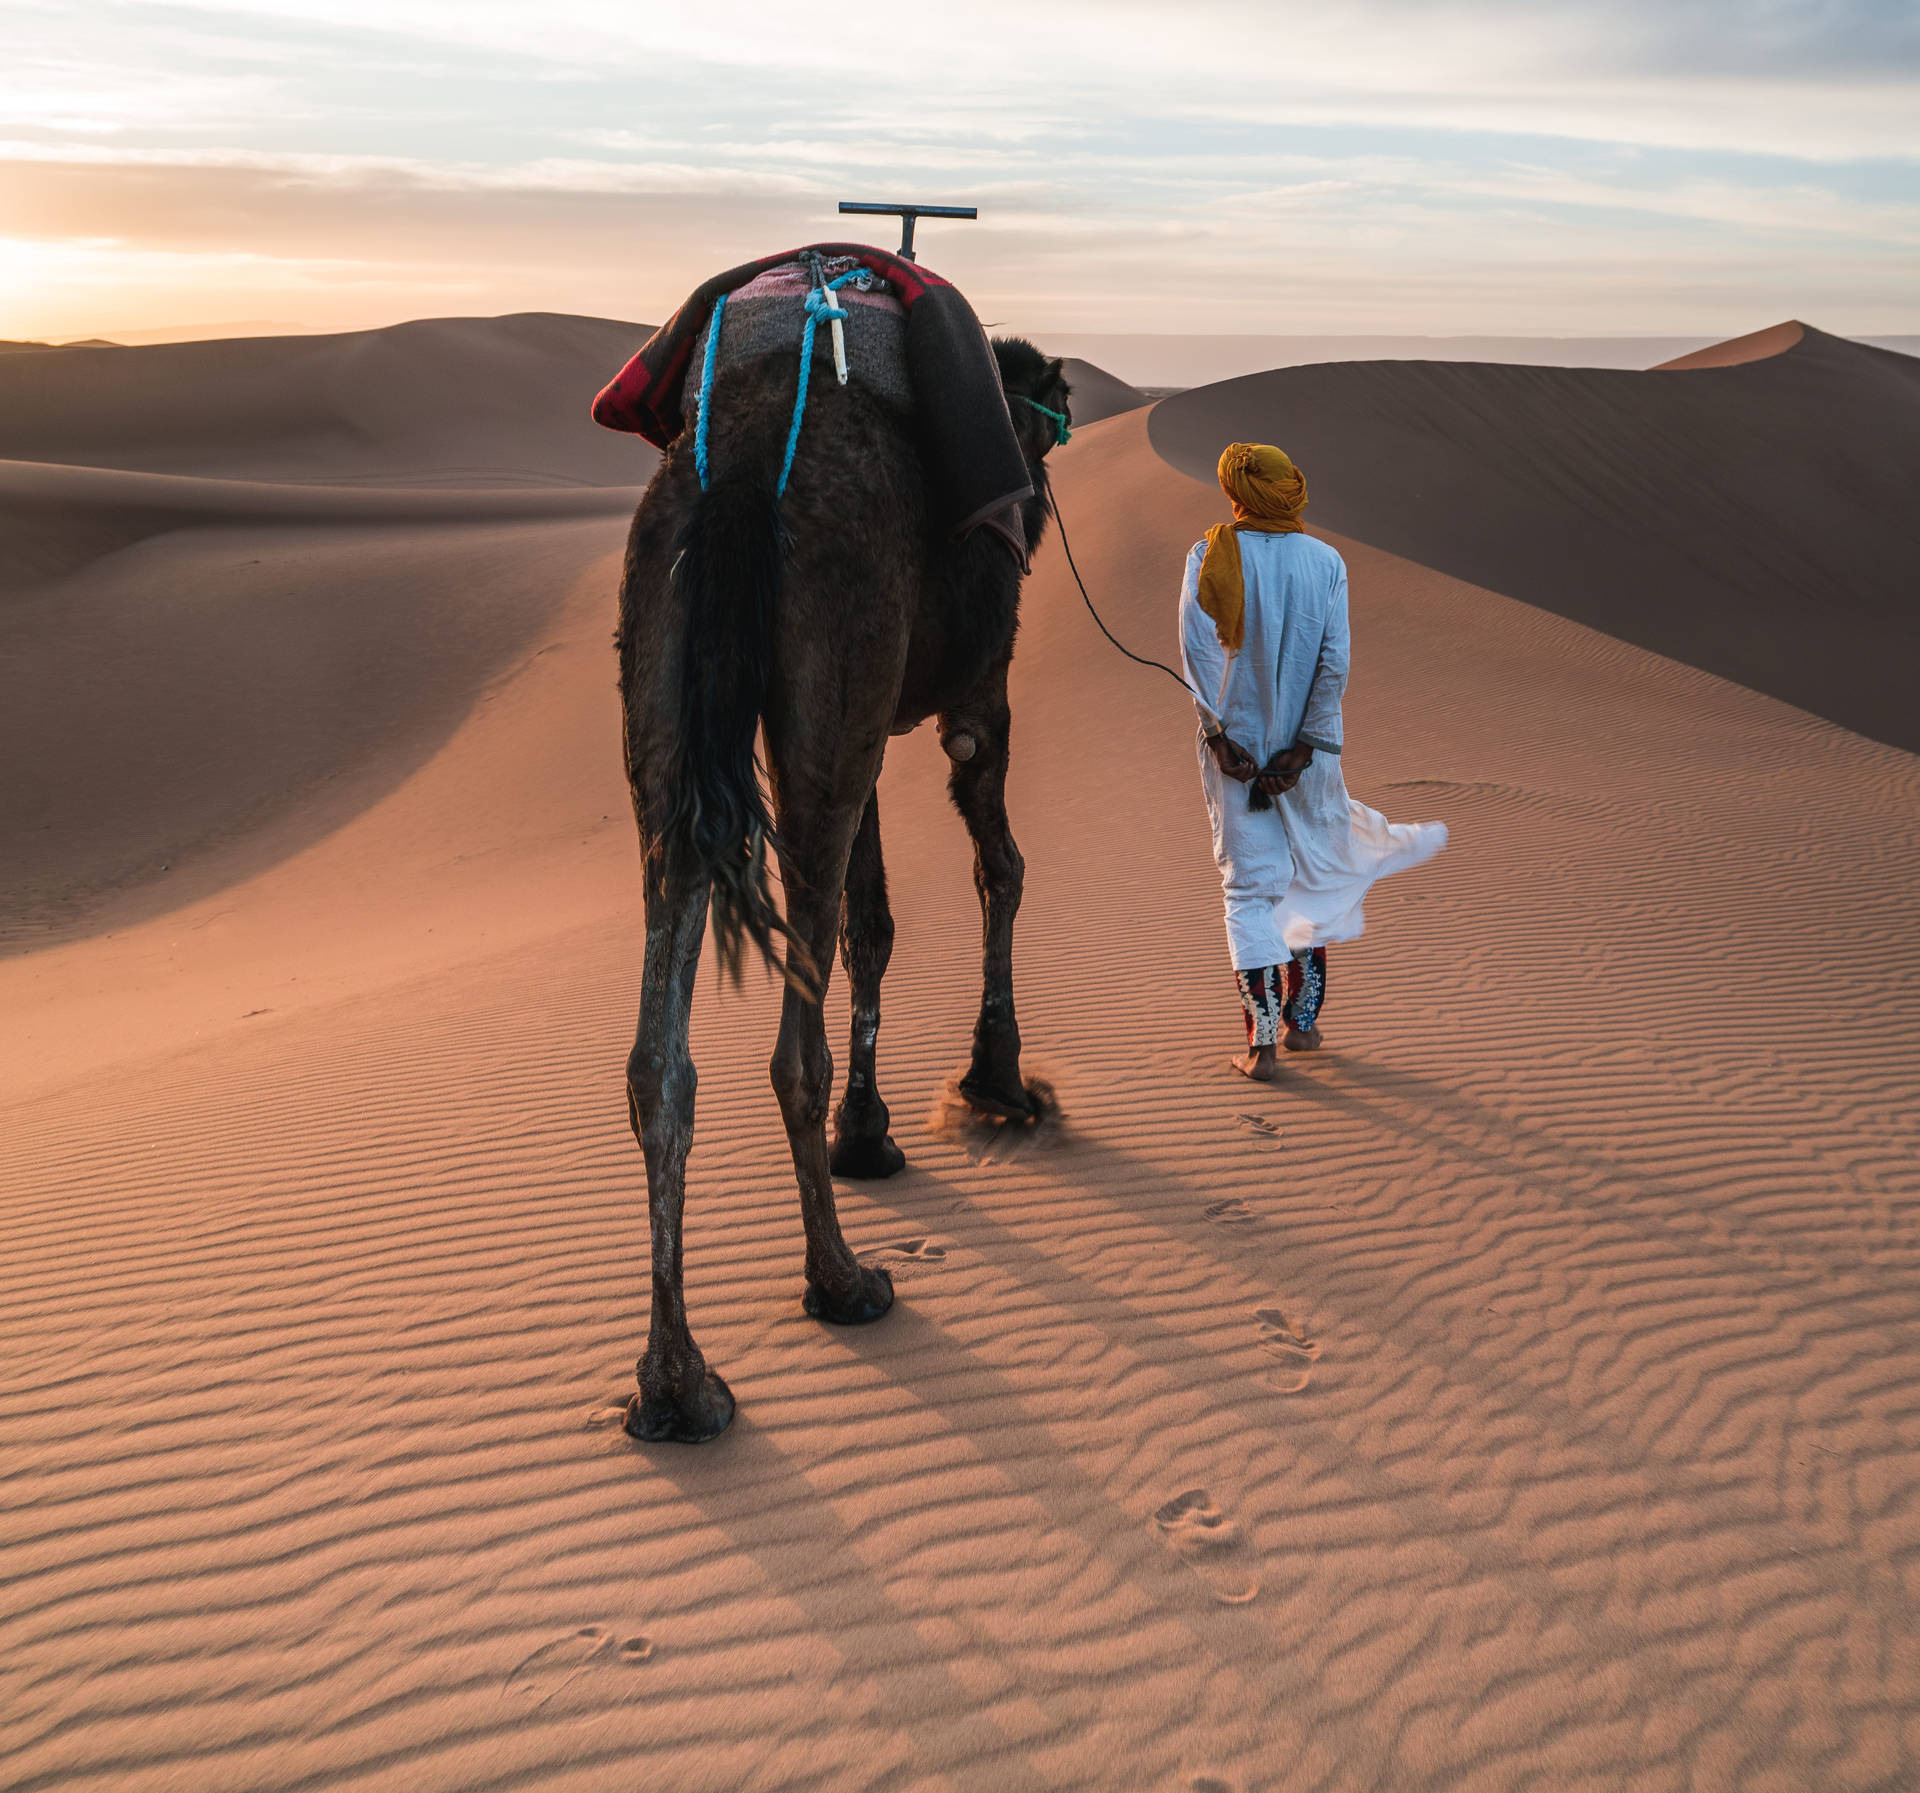 Morocco Desert Camel Background